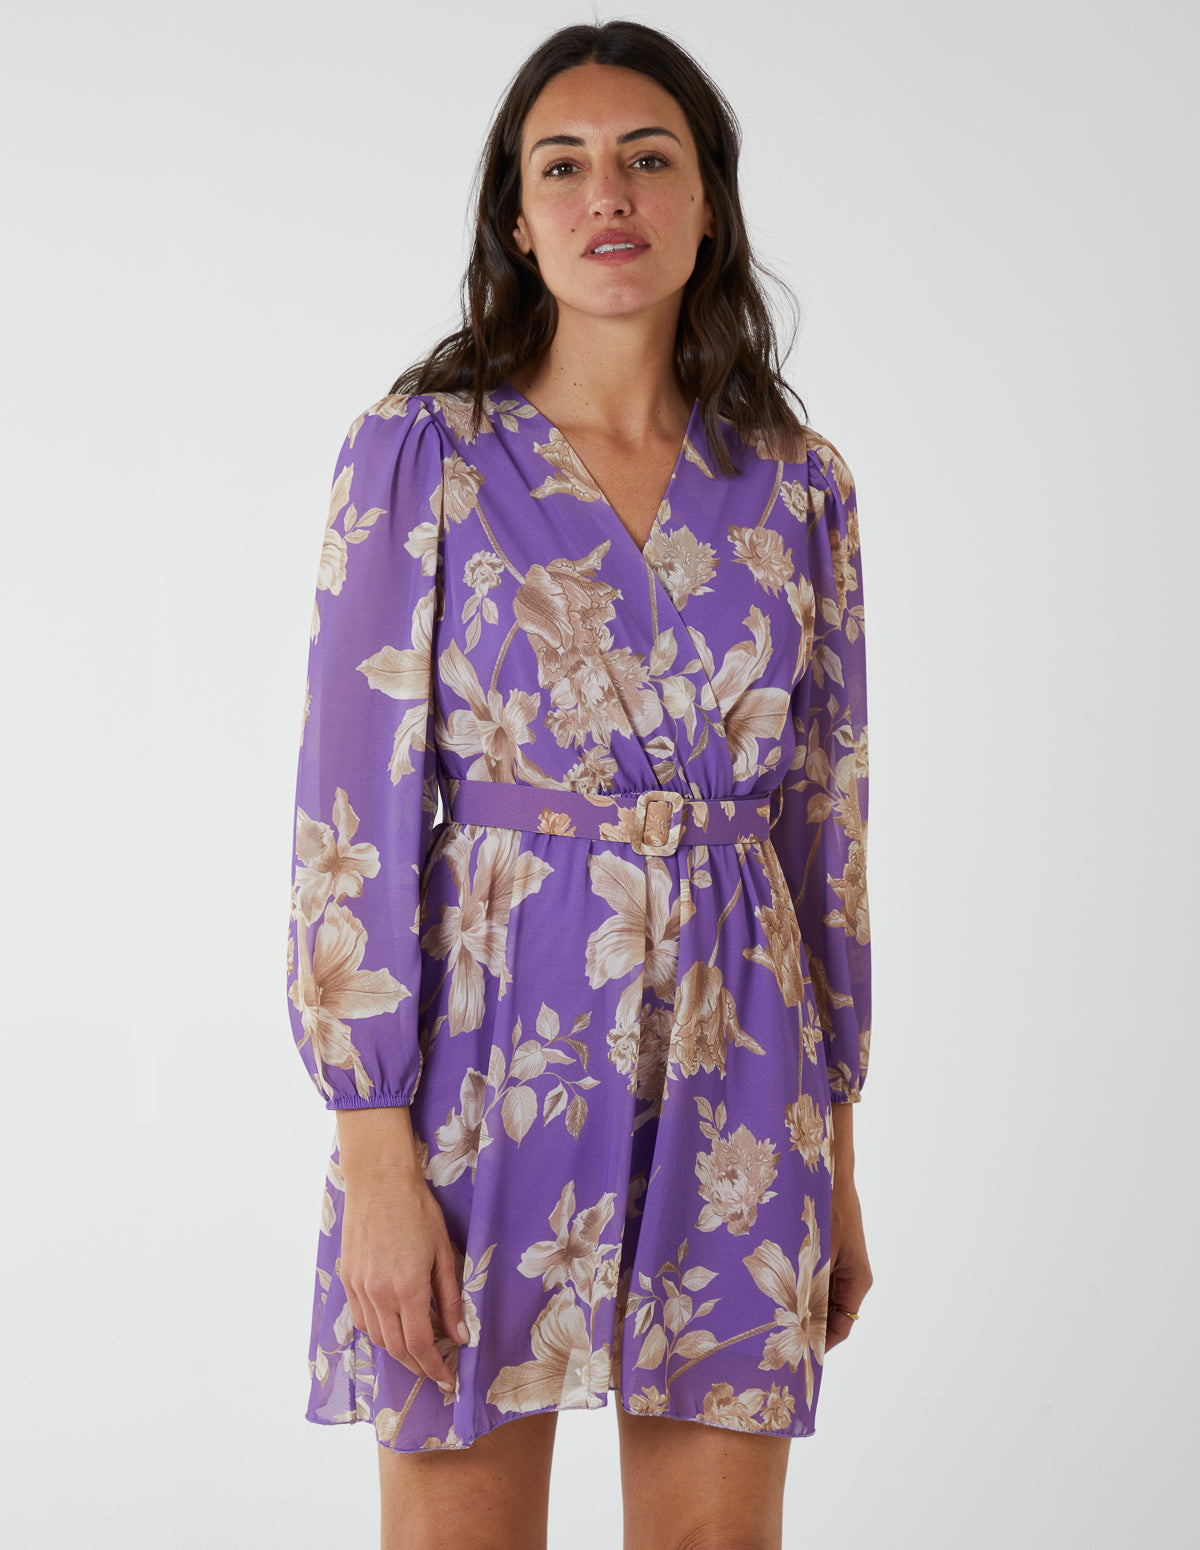 Floral Georgette Dress - S/M / Lilac